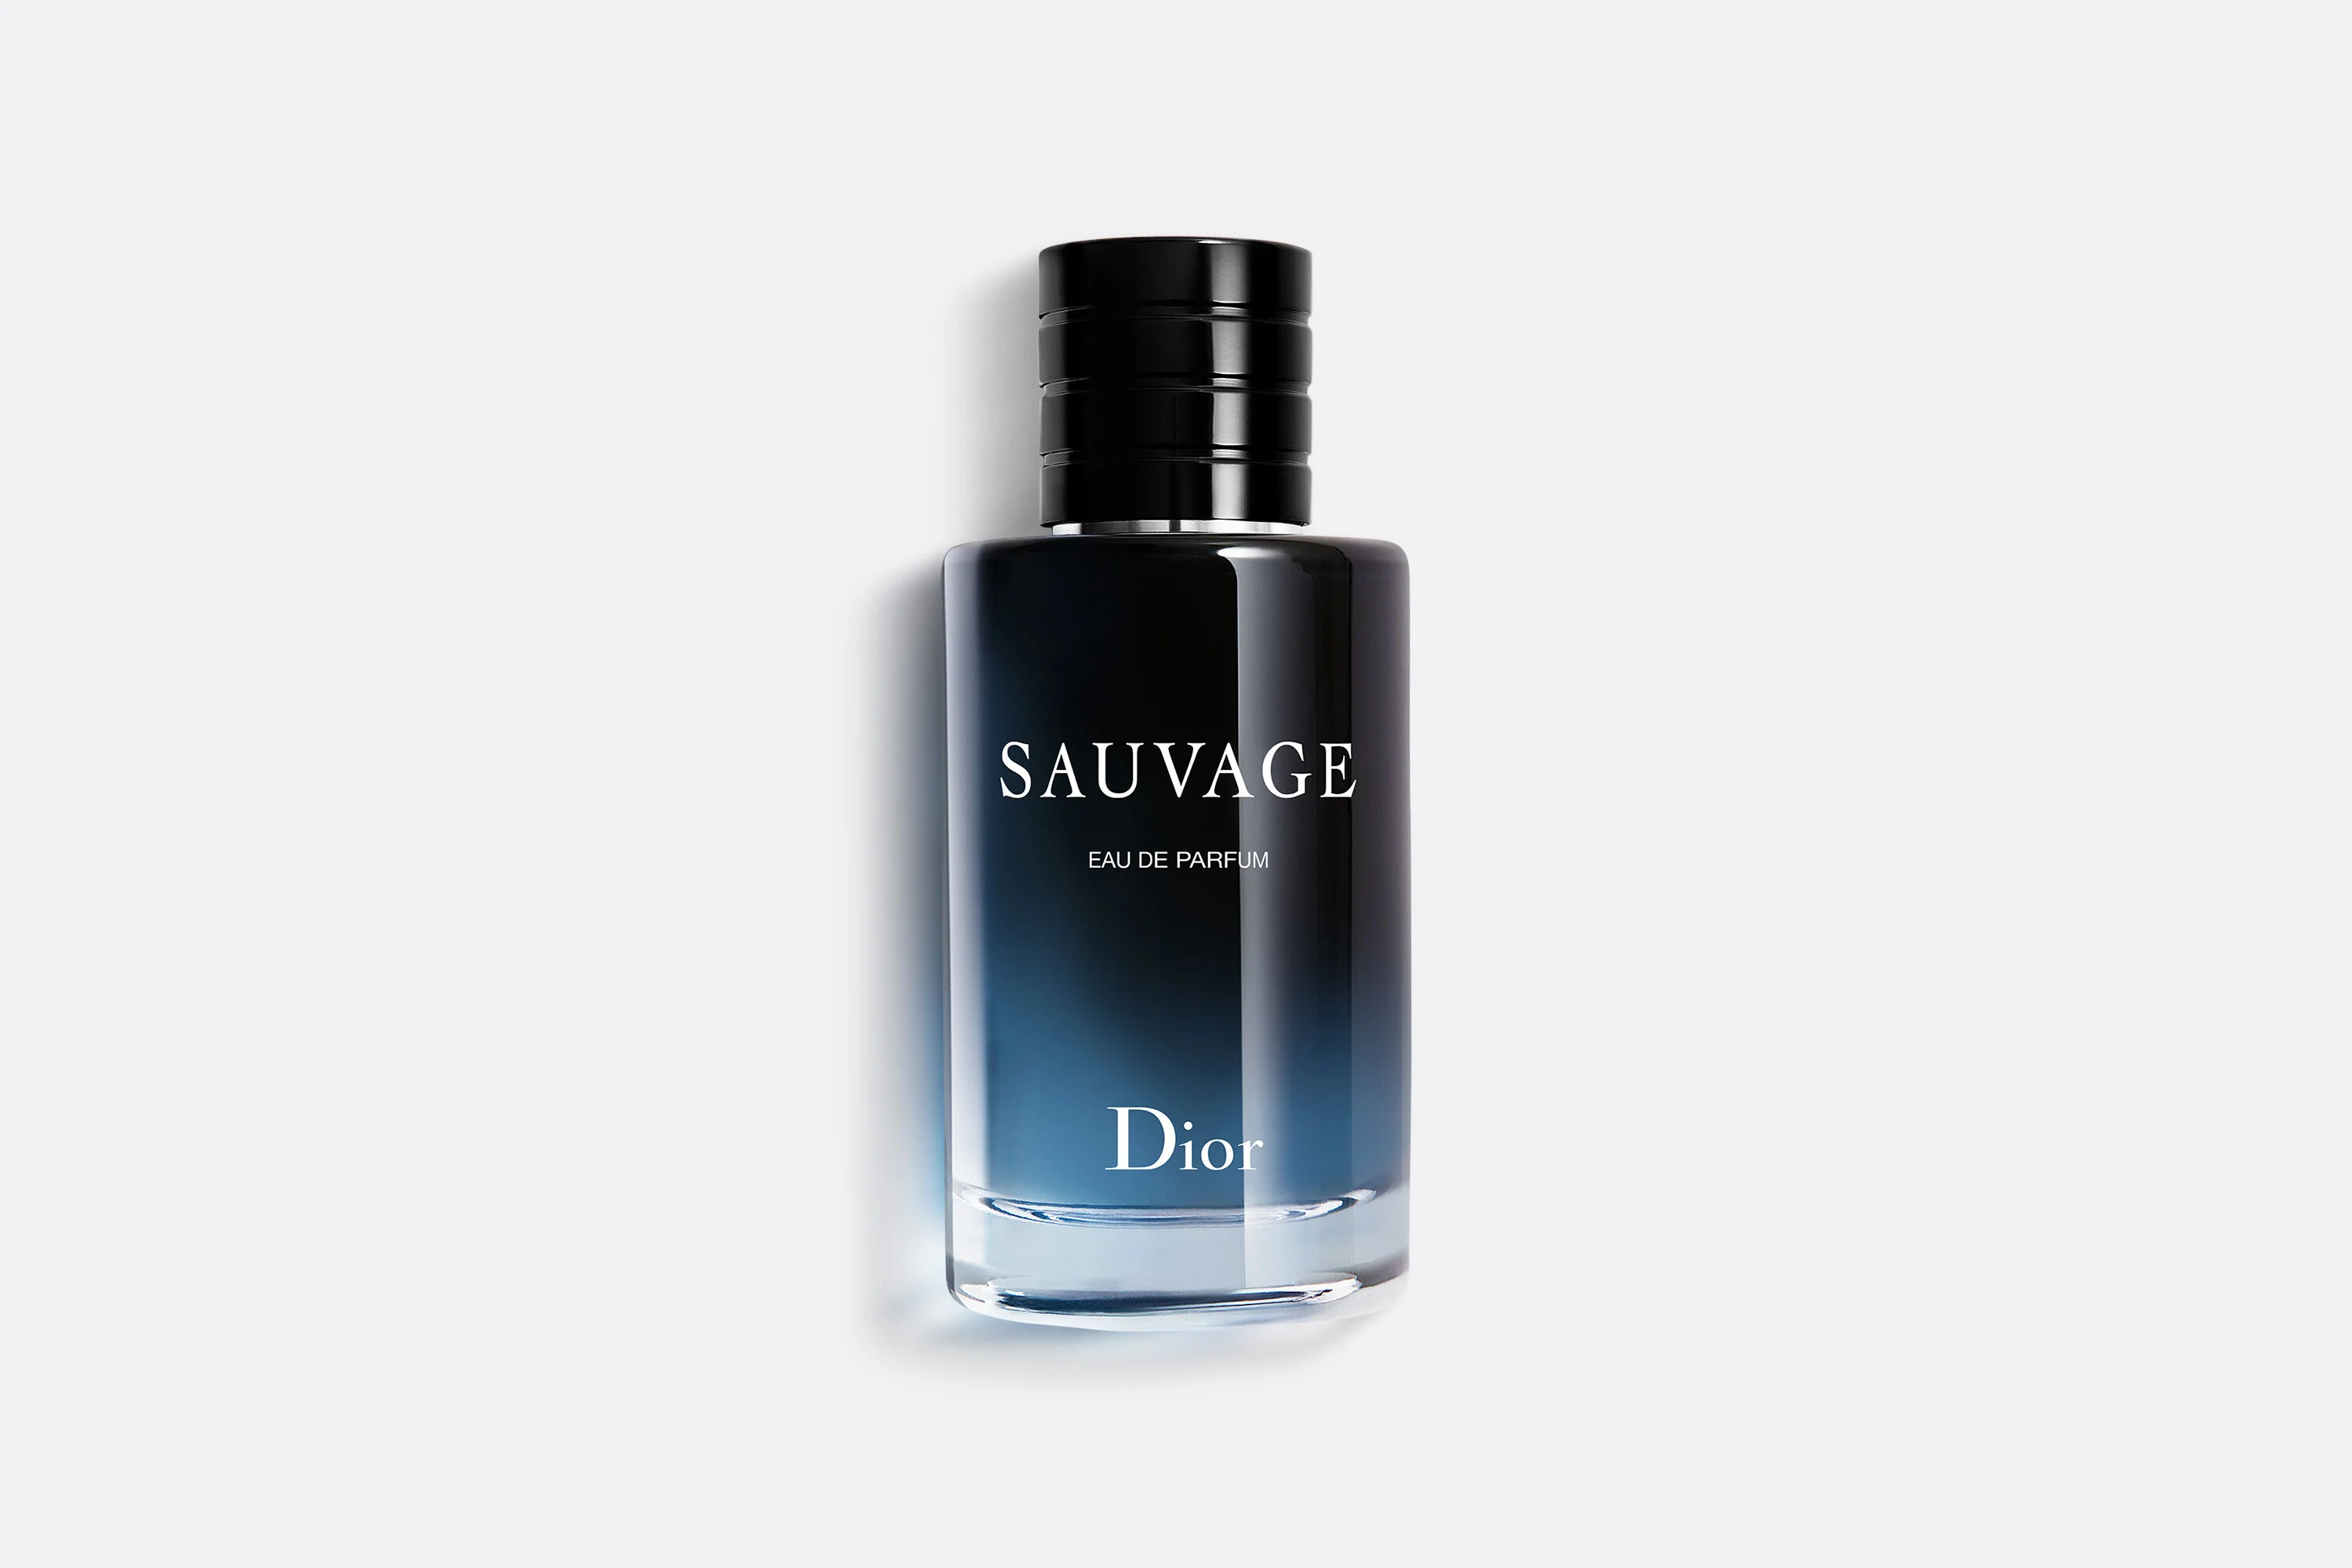 Sauvage EDP (Eau De Parfum bottle is shown in picture